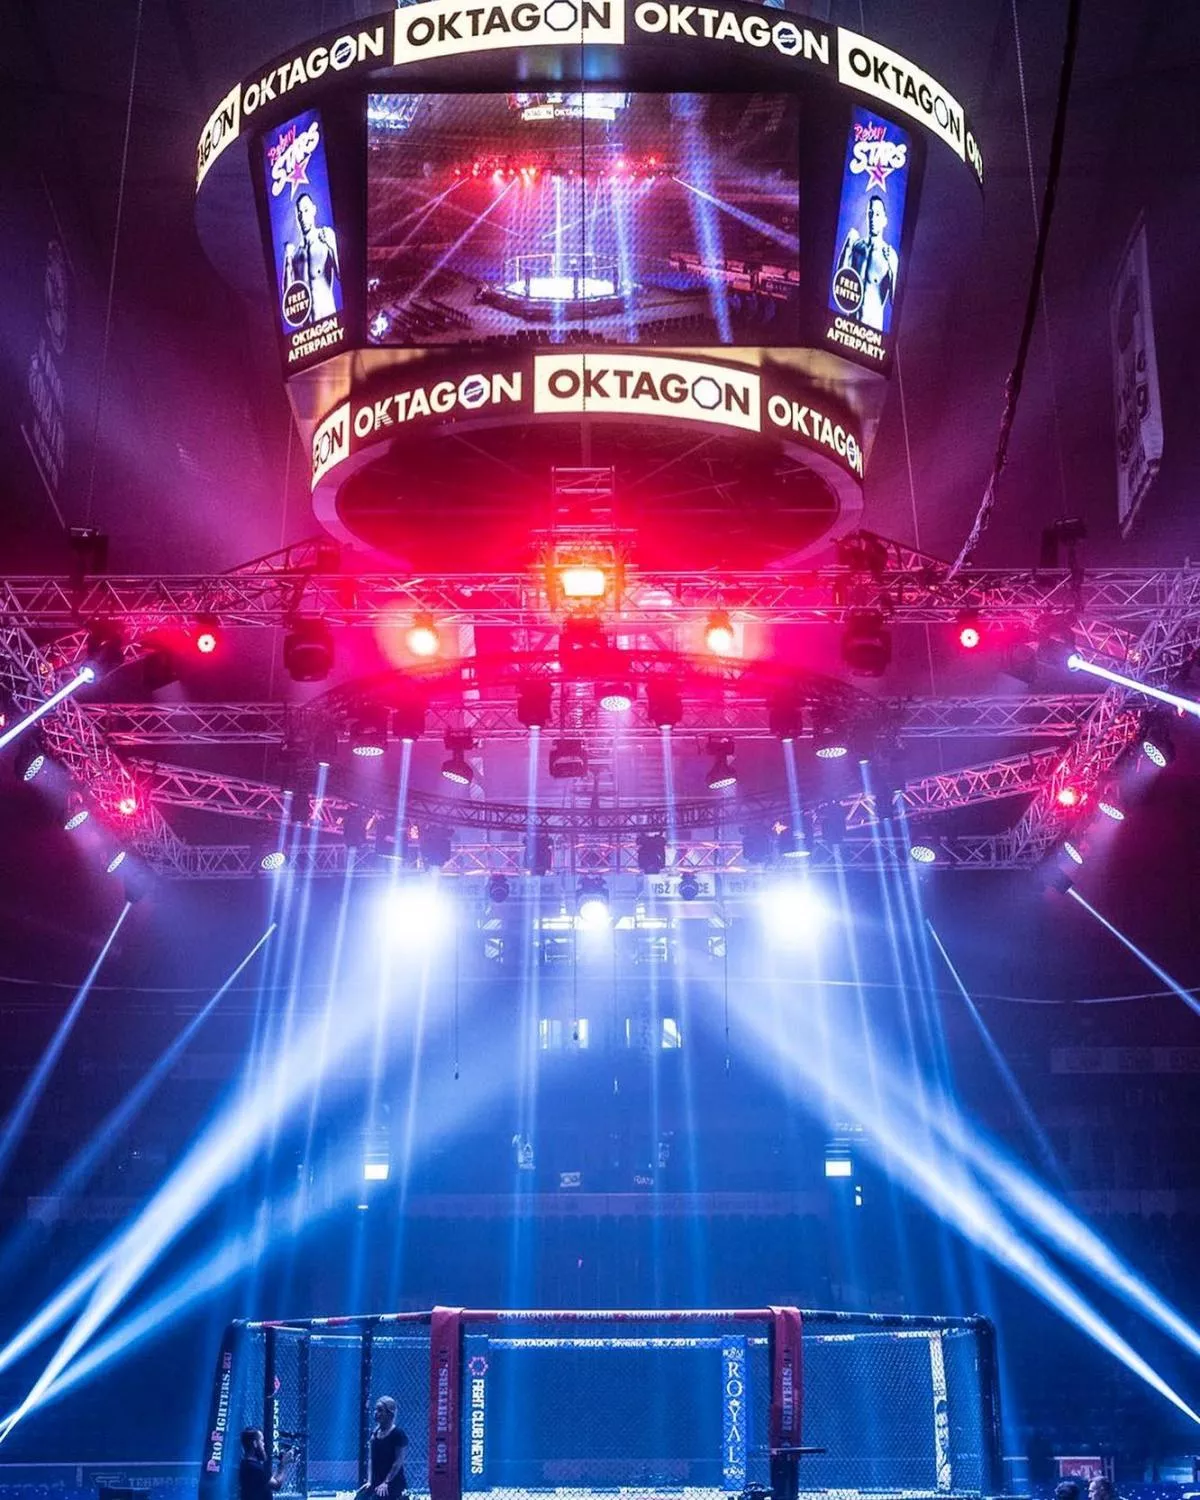 Tohle se nečekalo! Česká televize bude vysílat turnaje organizace OKTAGON MMA. Proč?